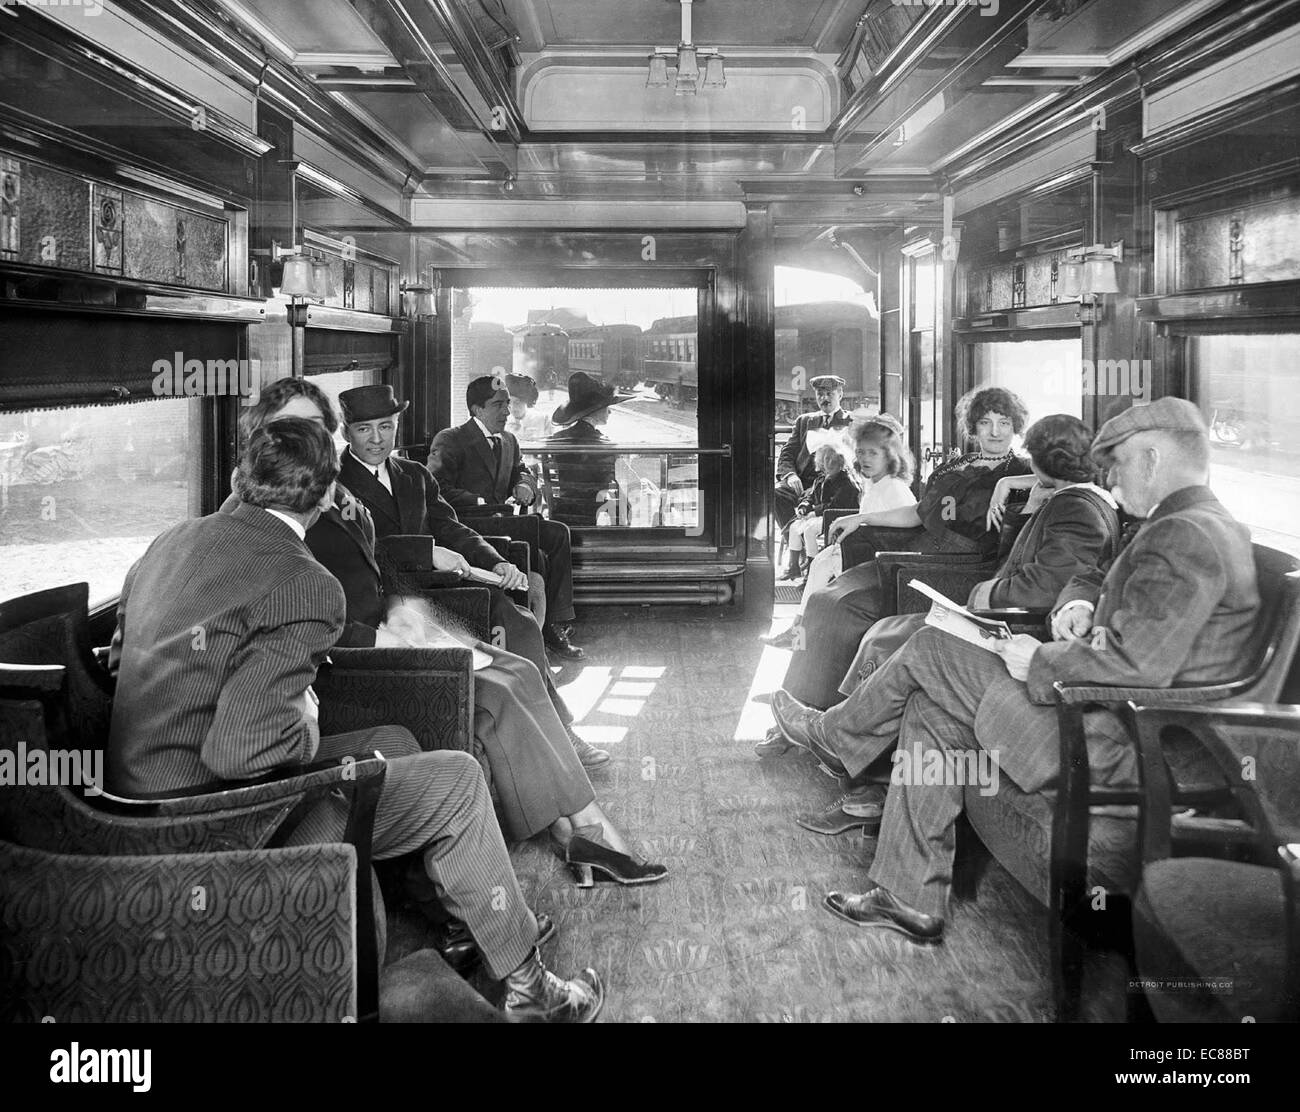 Fotografia di un'auto osservazione su un American deluxe treno via terra. Datata 1915 Foto Stock